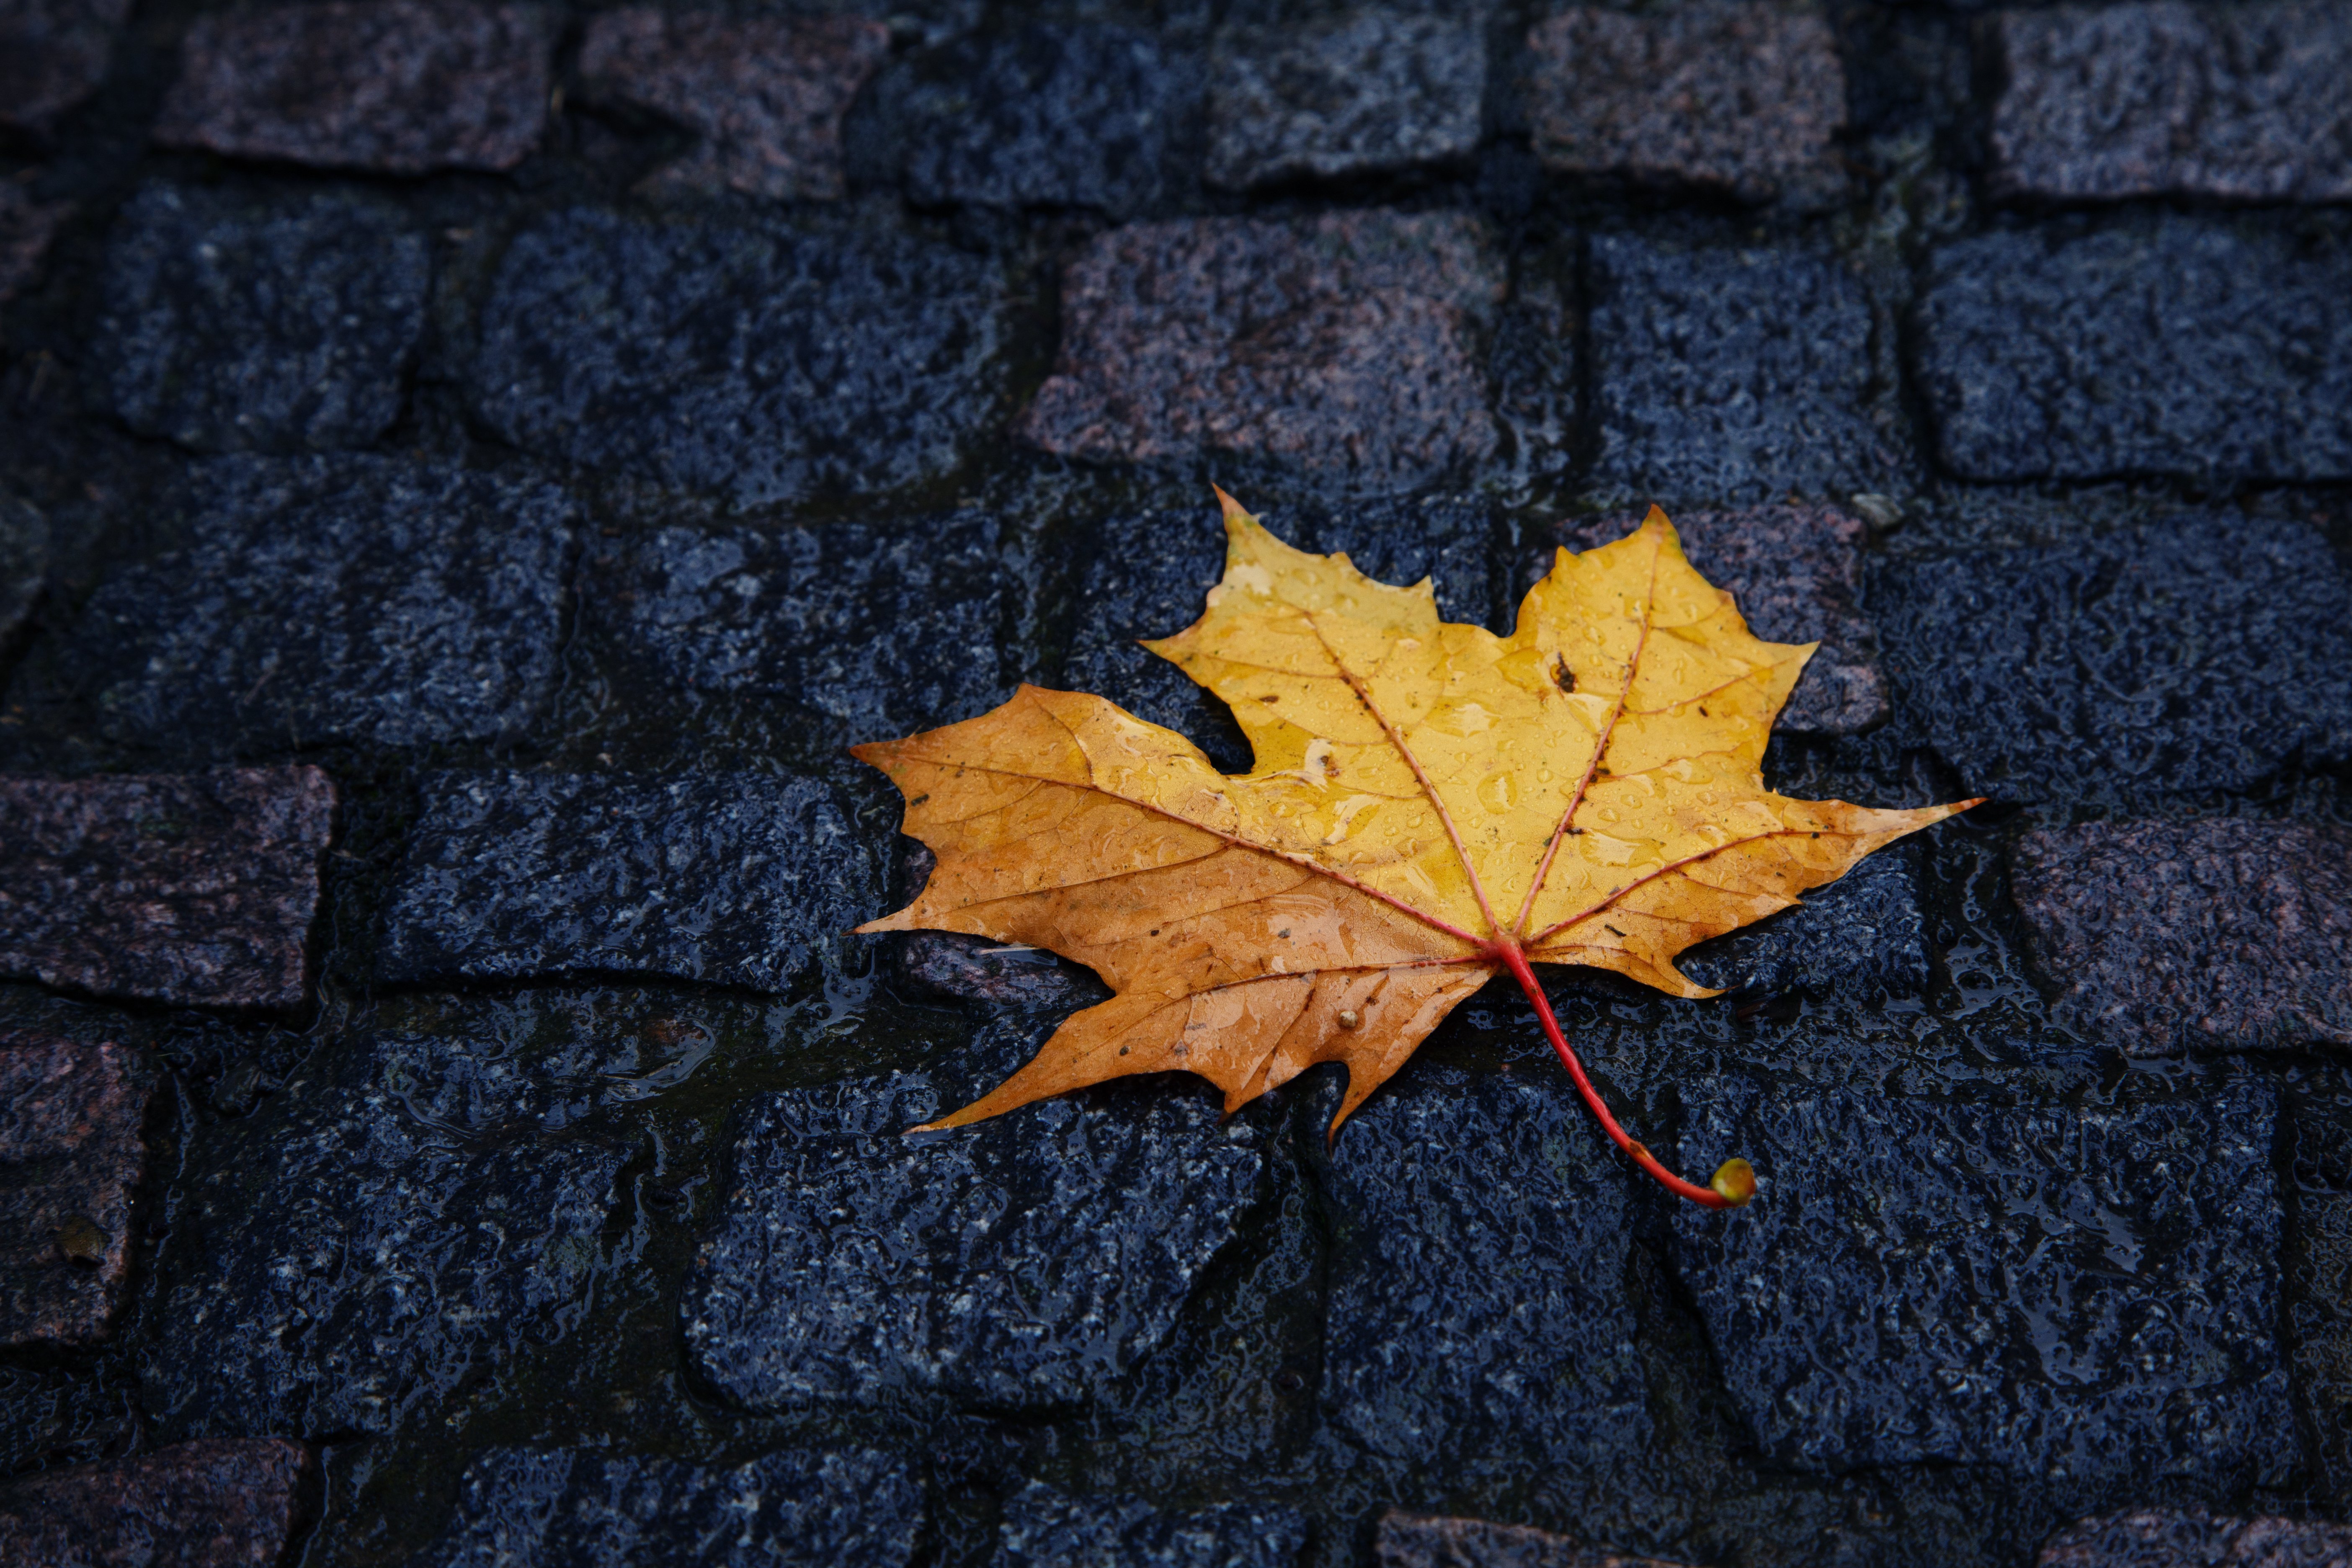 http://widowsvoice.com/wp-content/uploads/2015/09/autumn-yellow-leaf-lies-paving-rain.jpg